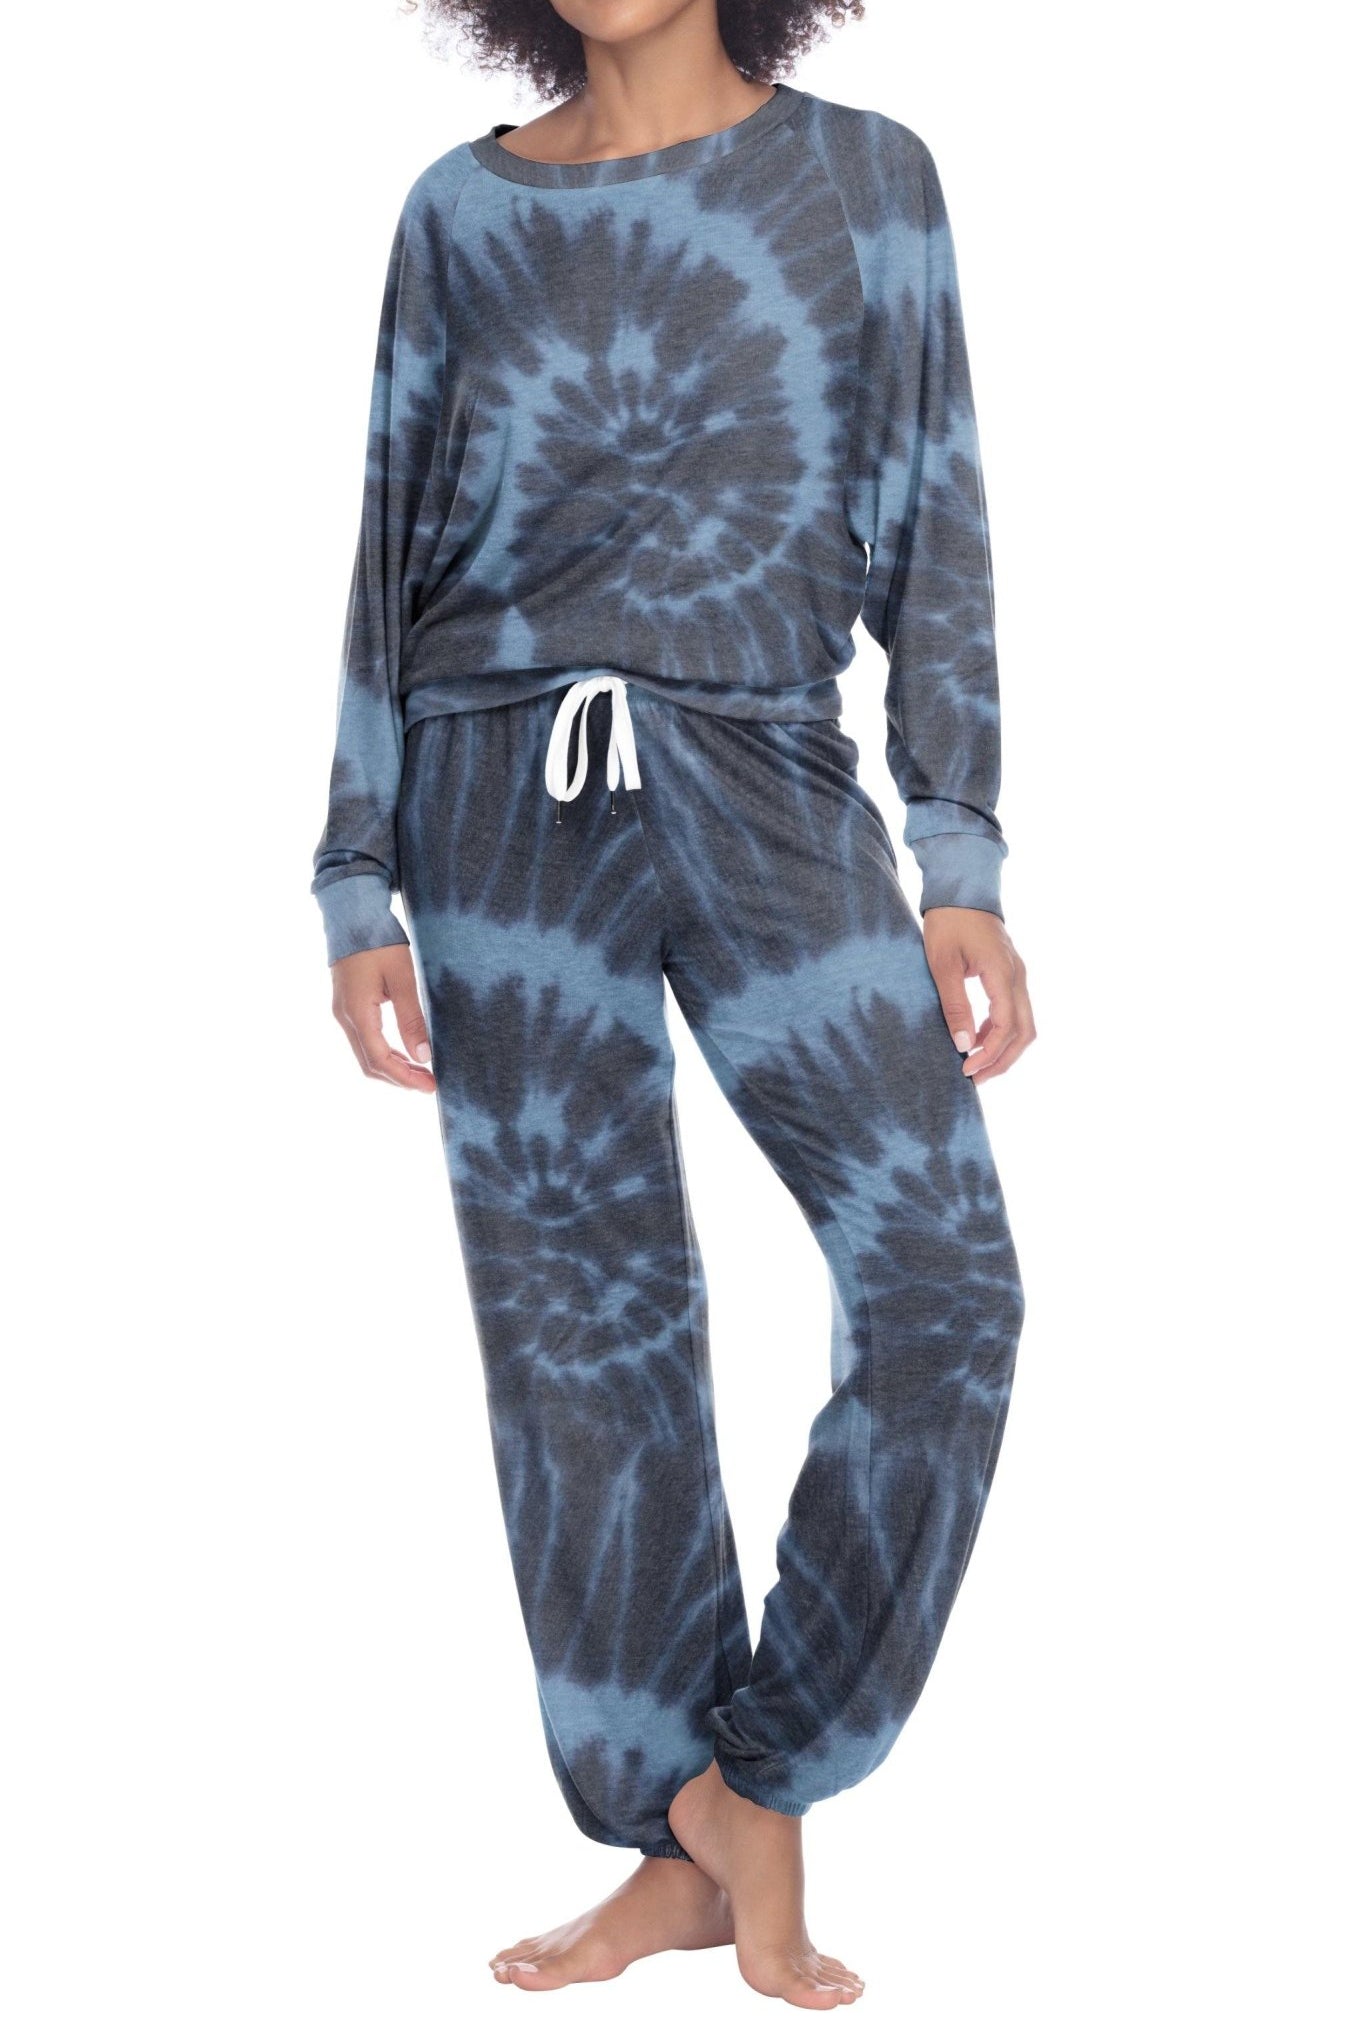 Star Seeker Long Set - Sleepwear & Loungewear - Navy Tie-Dye